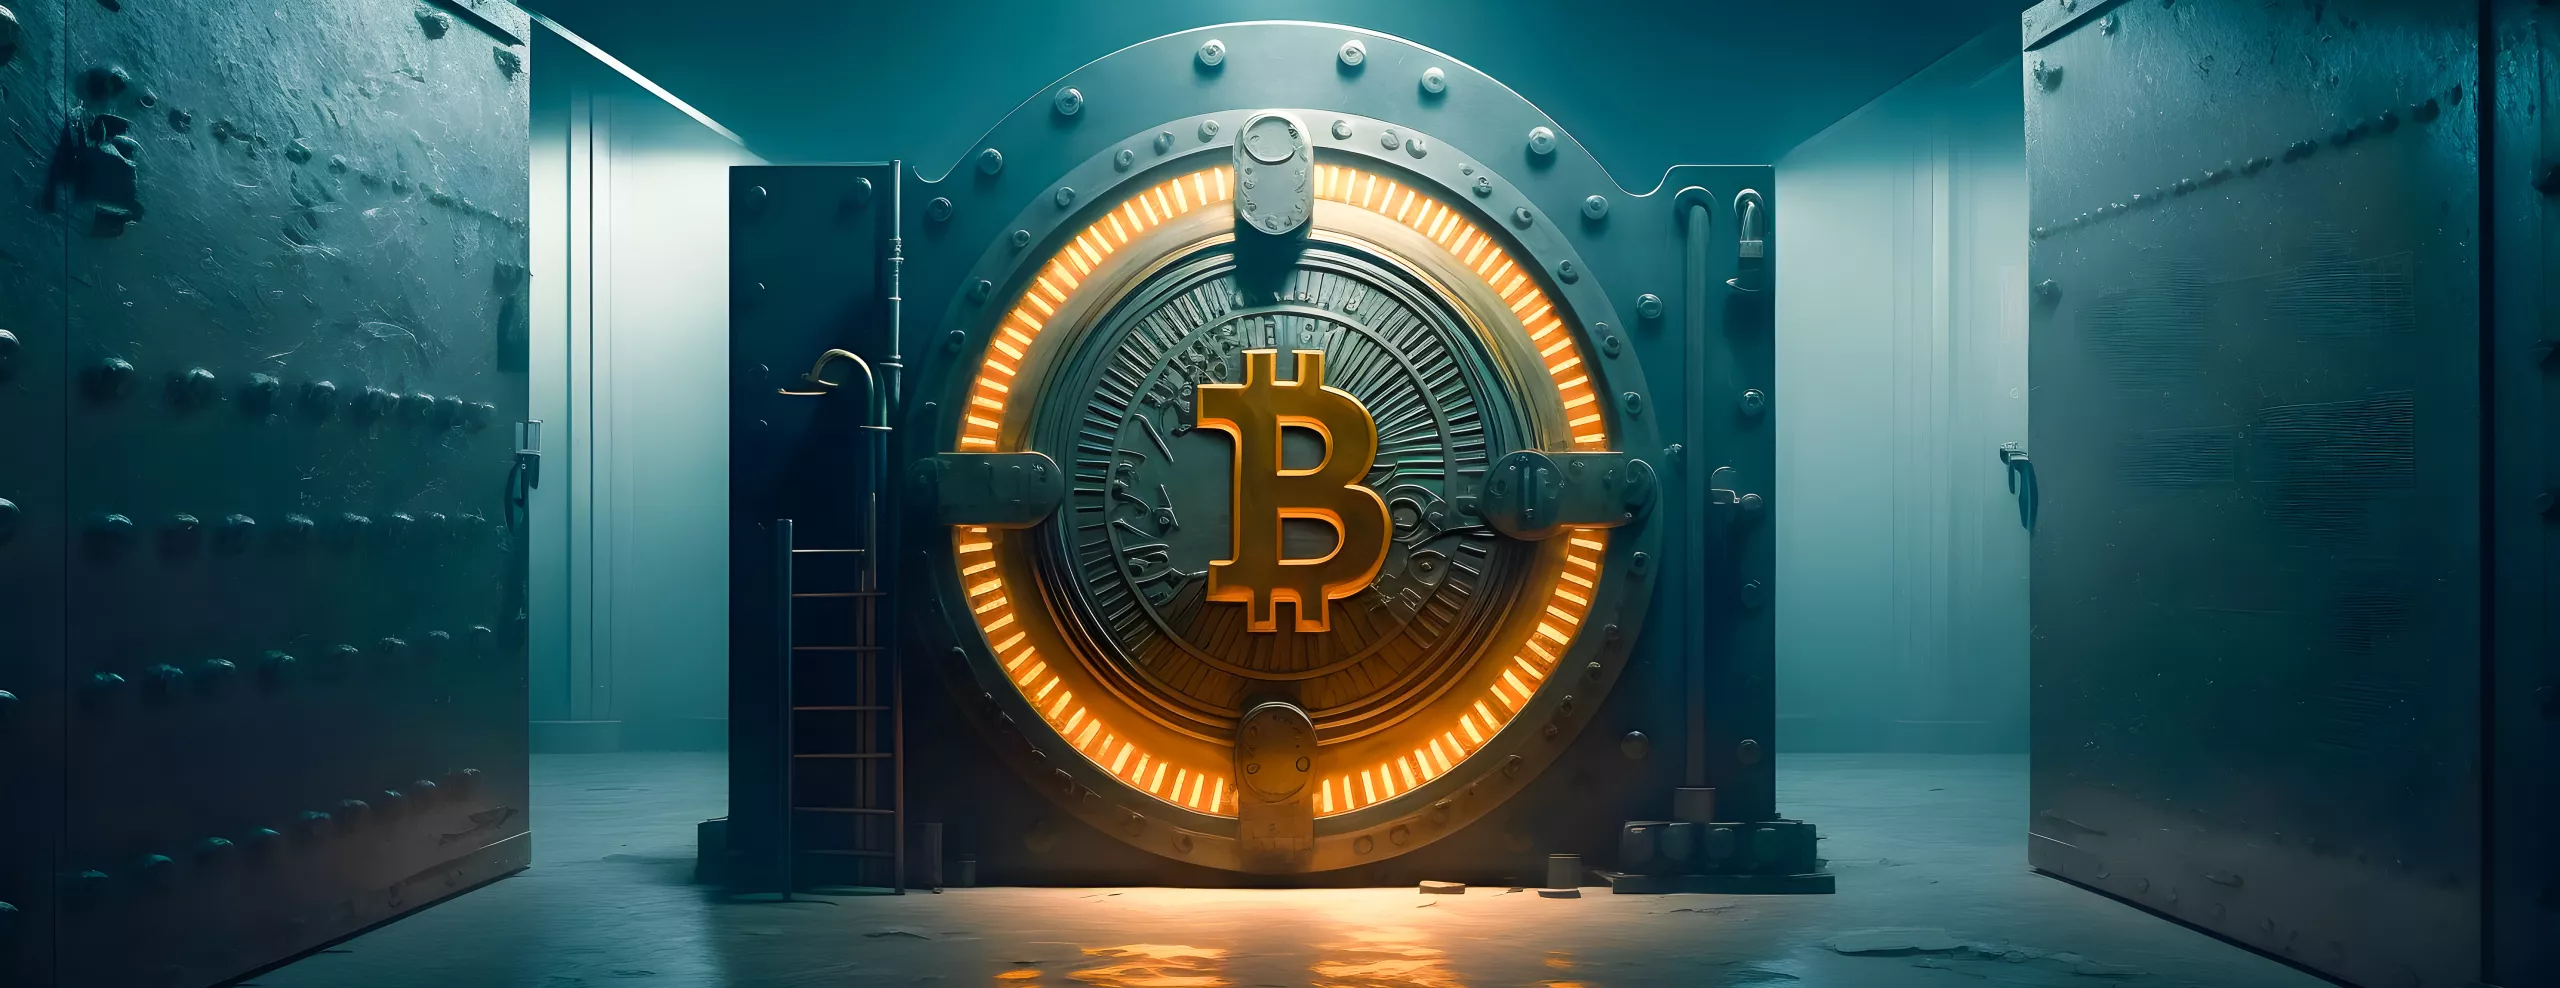 Gold Safe Bitcoin BTC